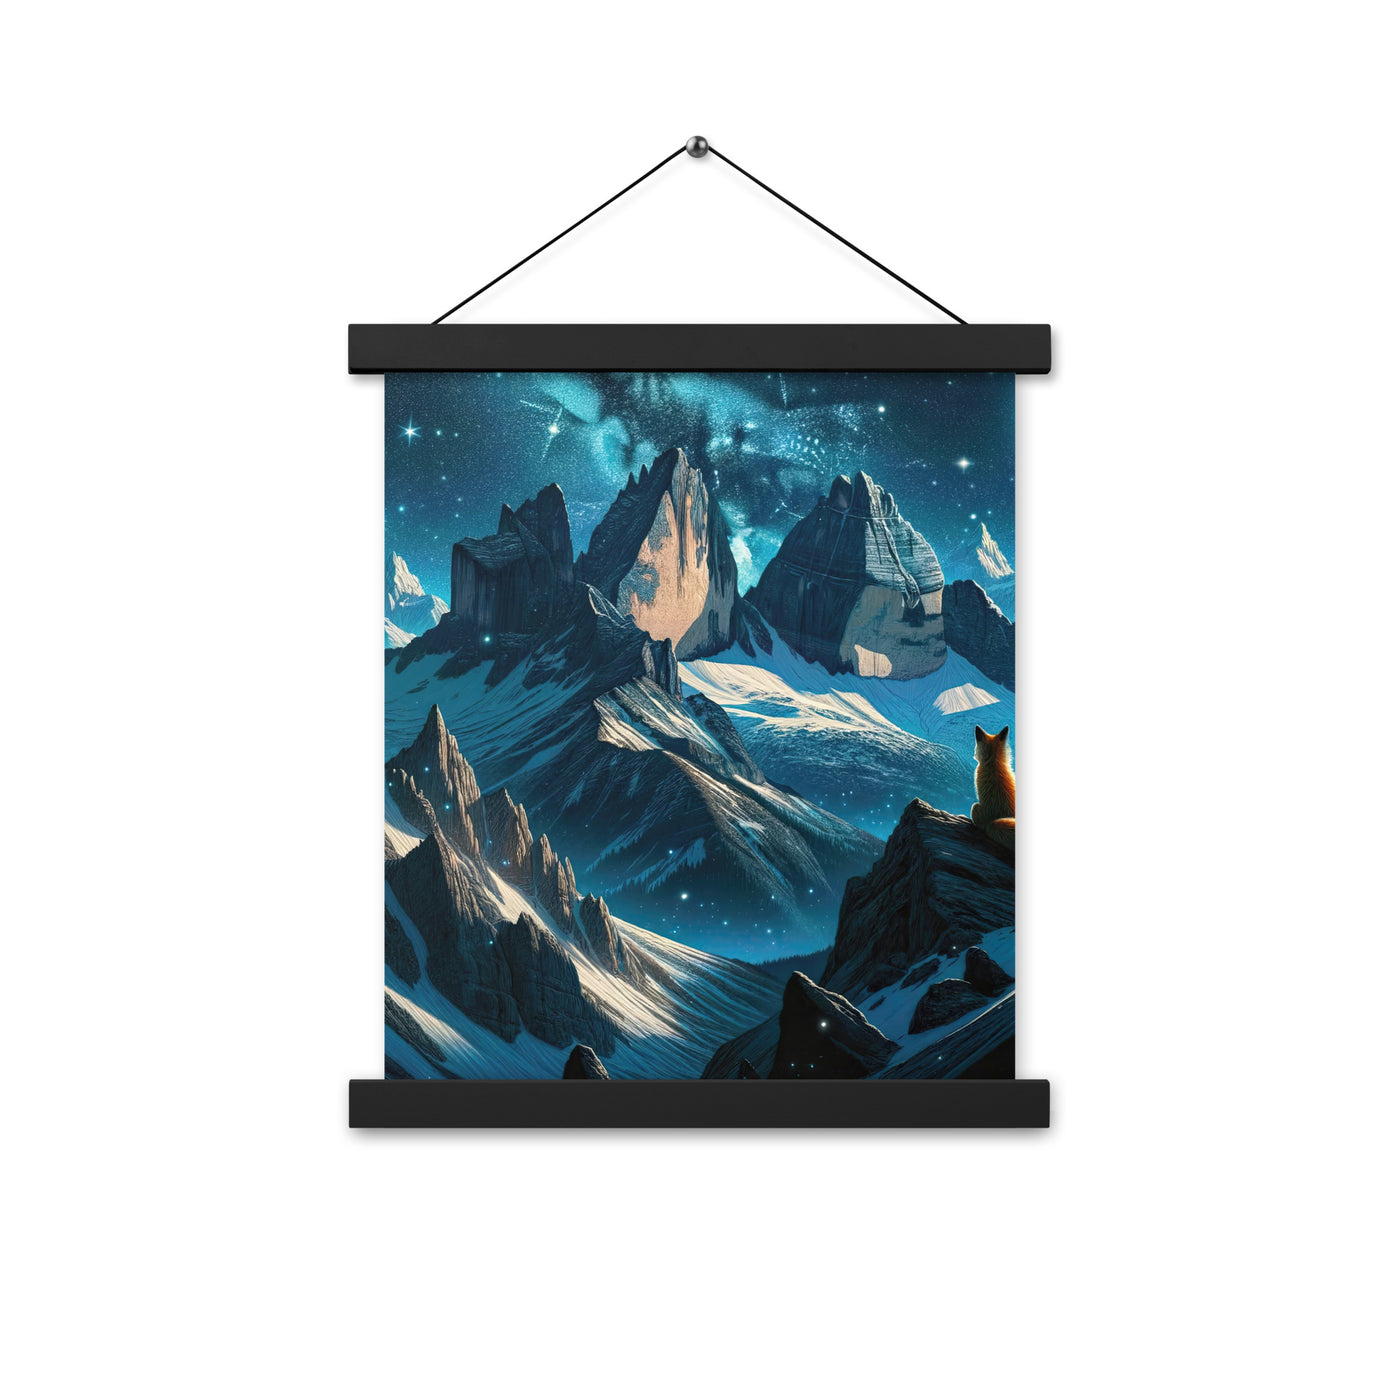 Fuchs in Alpennacht: Digitale Kunst der eisigen Berge im Mondlicht - Premium Poster mit Aufhängung camping xxx yyy zzz 27.9 x 35.6 cm